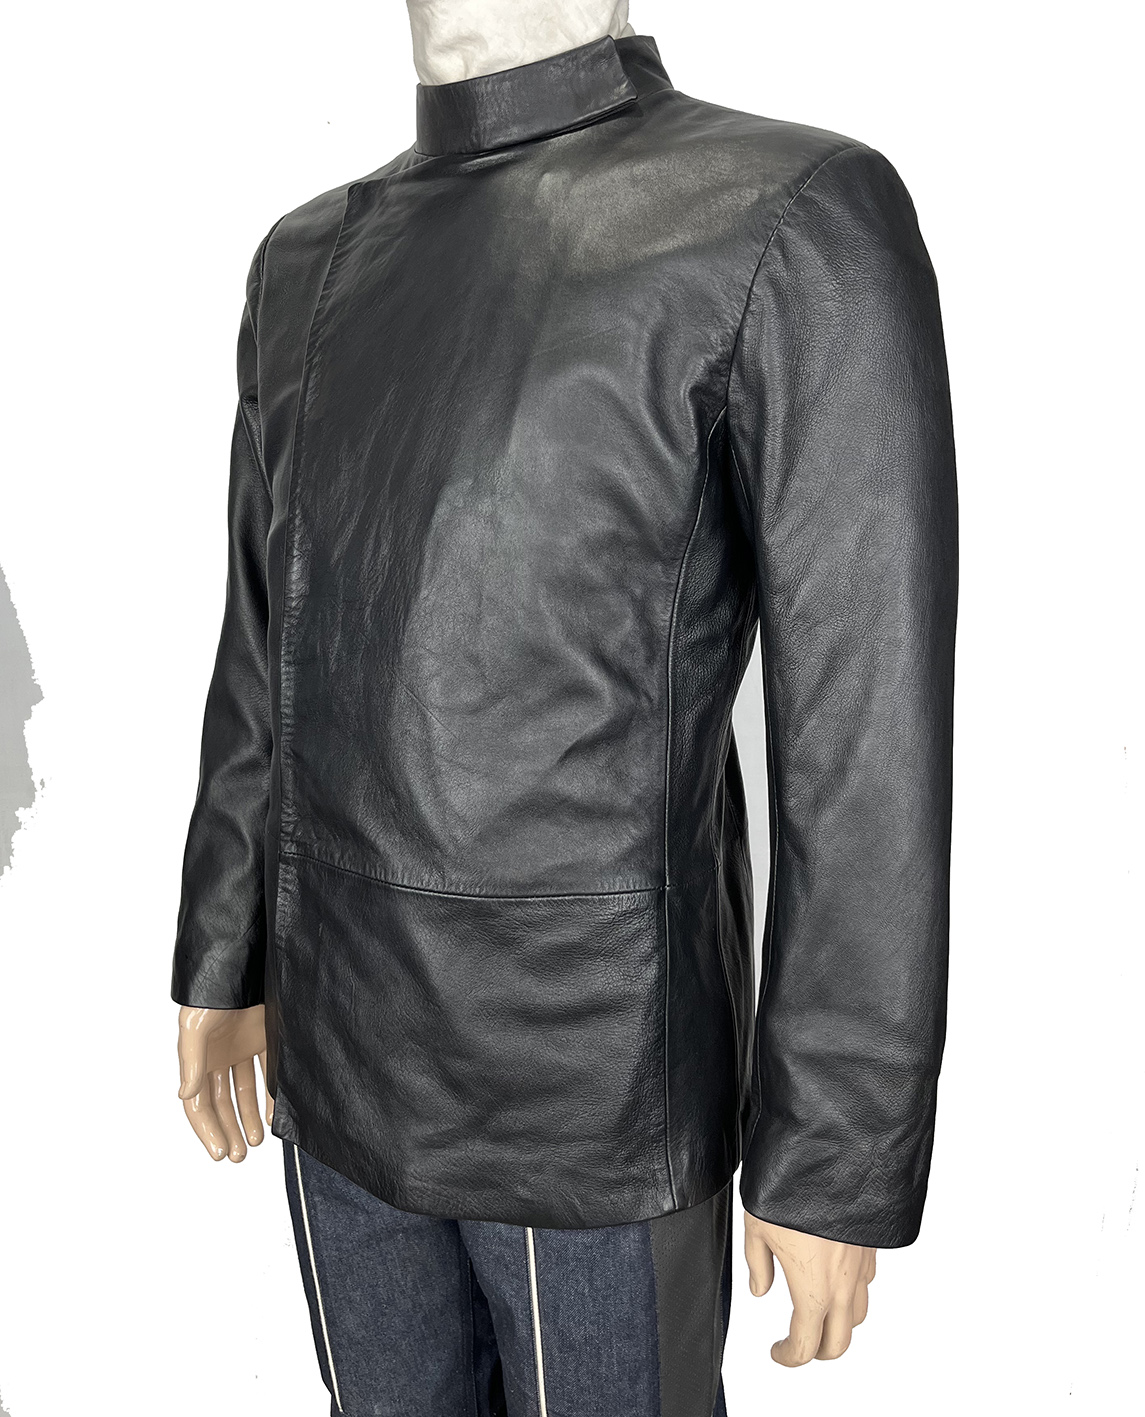 ELS Section 31 Black Leather Jacket FRONT.jpg